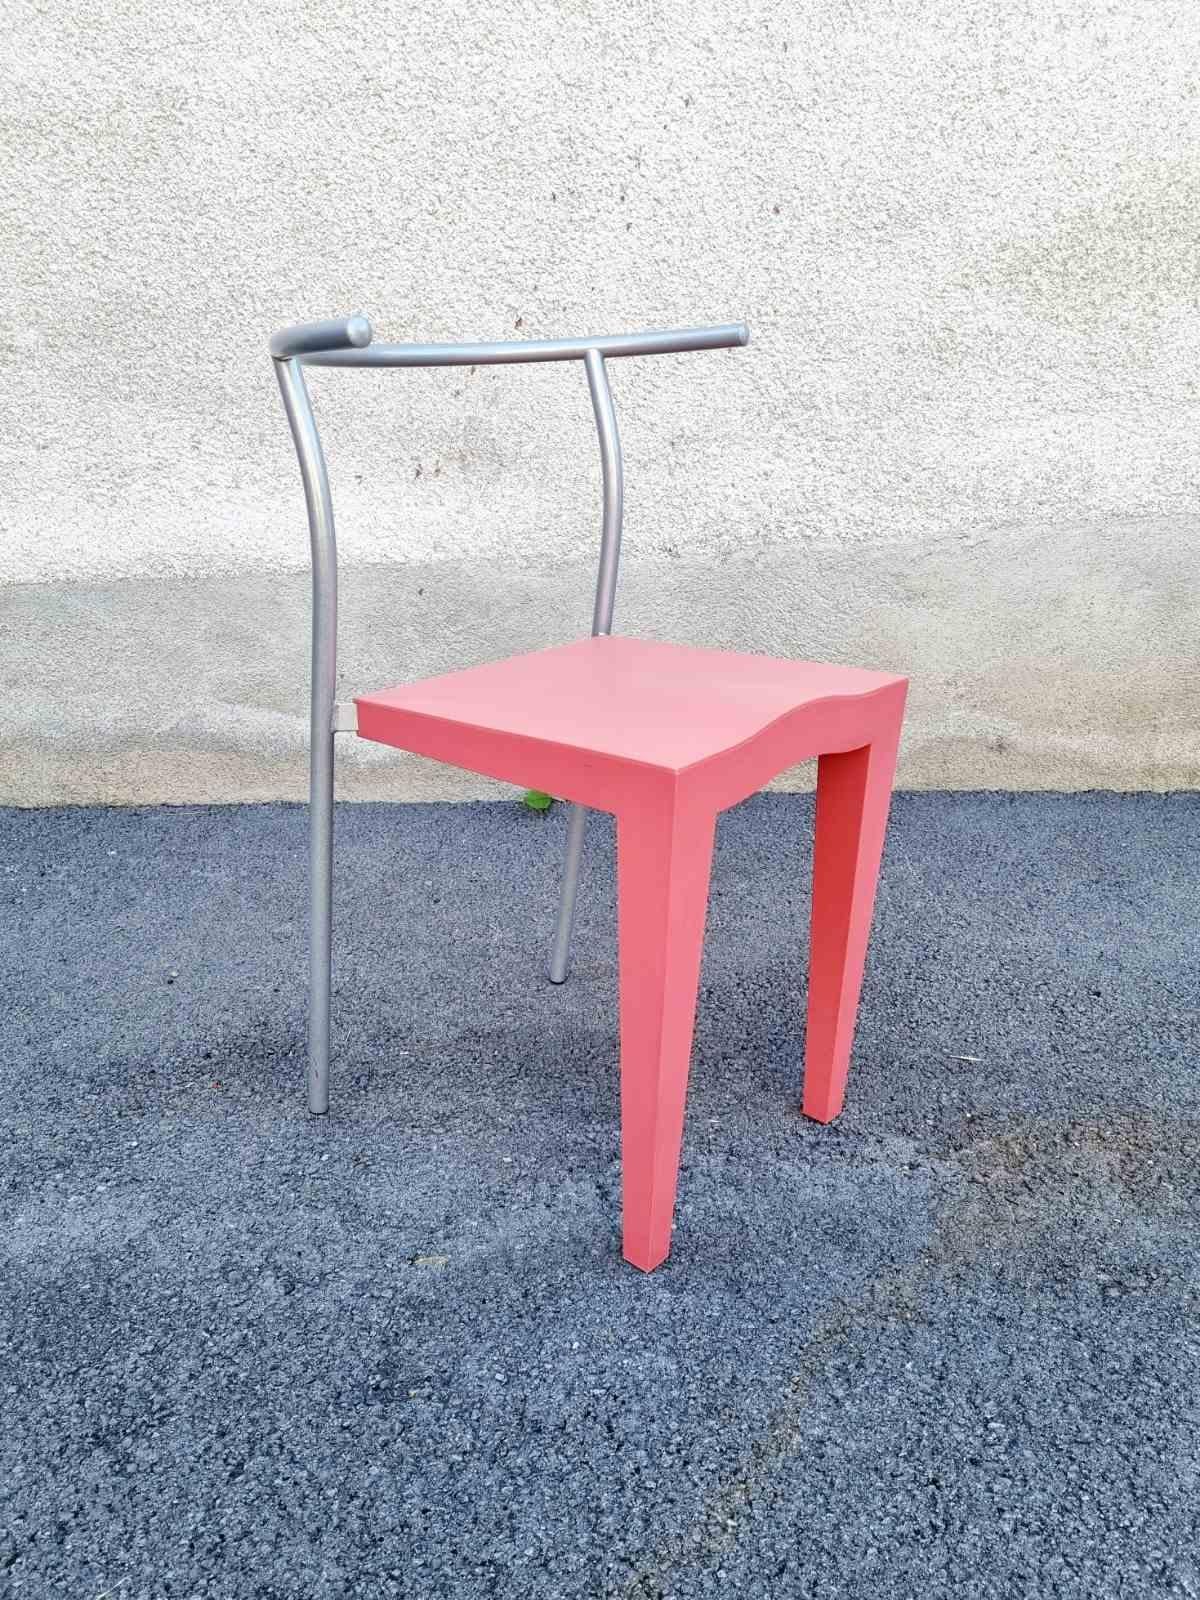 Très rare chaise en plastique postmoderne, modèle Dr Glob, a été conçue par Philippe Starck pour Kartell Italie dans les années 80 ; exactement en 1986.

Cette chaise rétro en plastique est en très bon état, avec des signes mineurs d'utilisation. Il